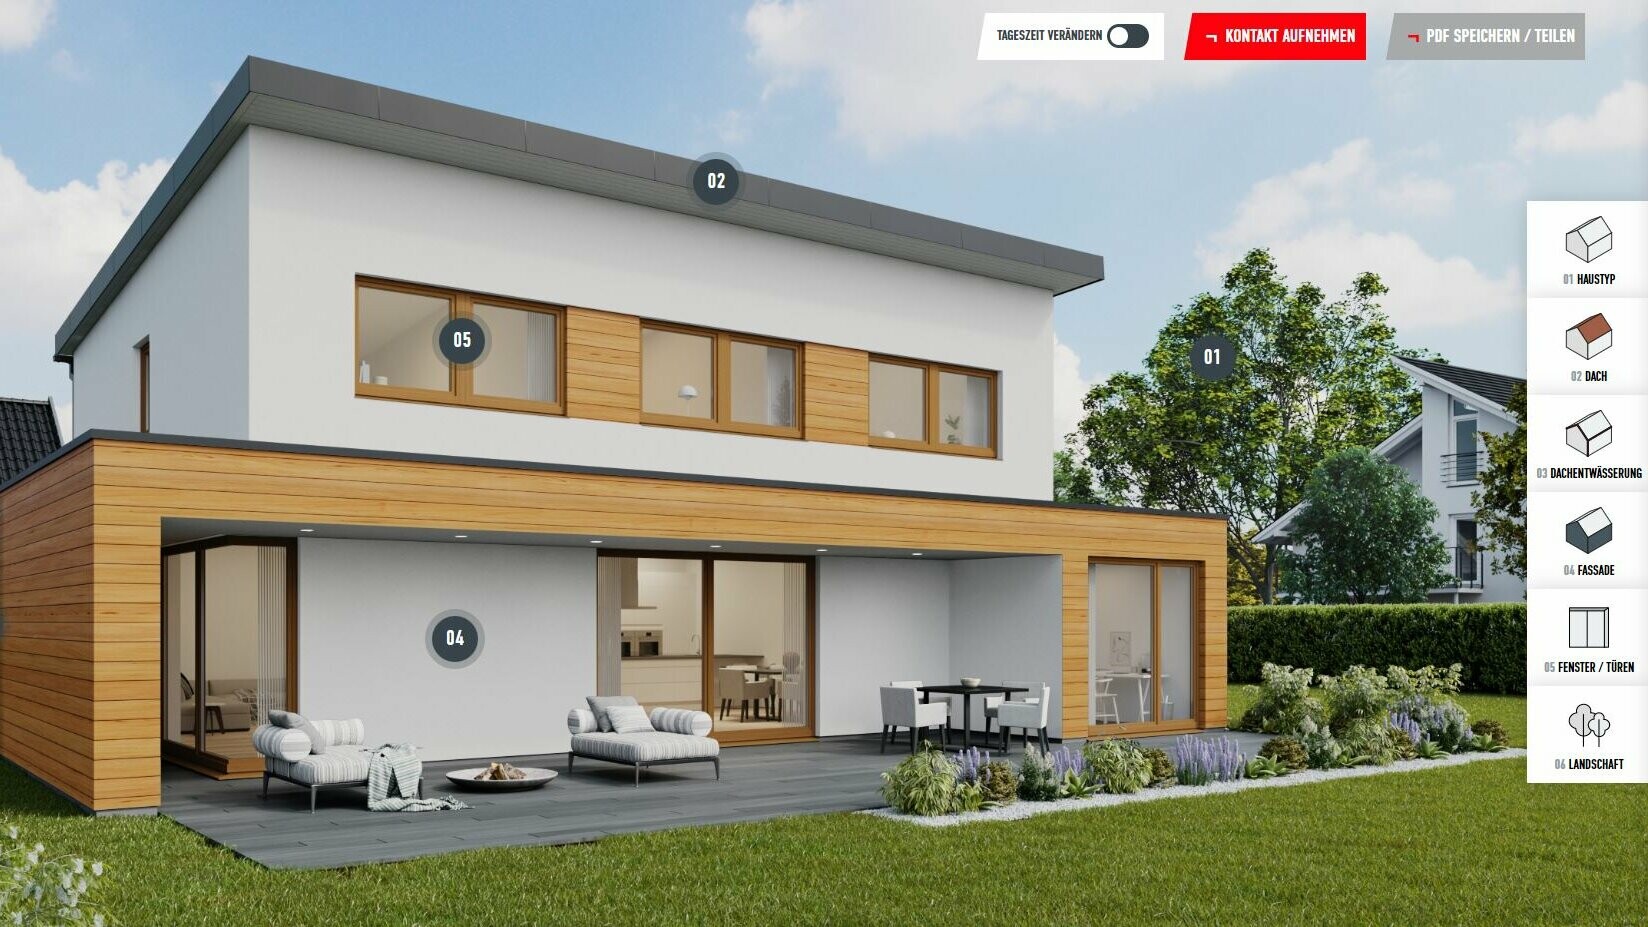 Príklad náhľadu konfigurácie rodinného domu s pultovou strechou vo farbe P.10 čierna vrátane drevených prvkov na fasáde. Dom sa nachádza v obytnej oblasti predmestia.